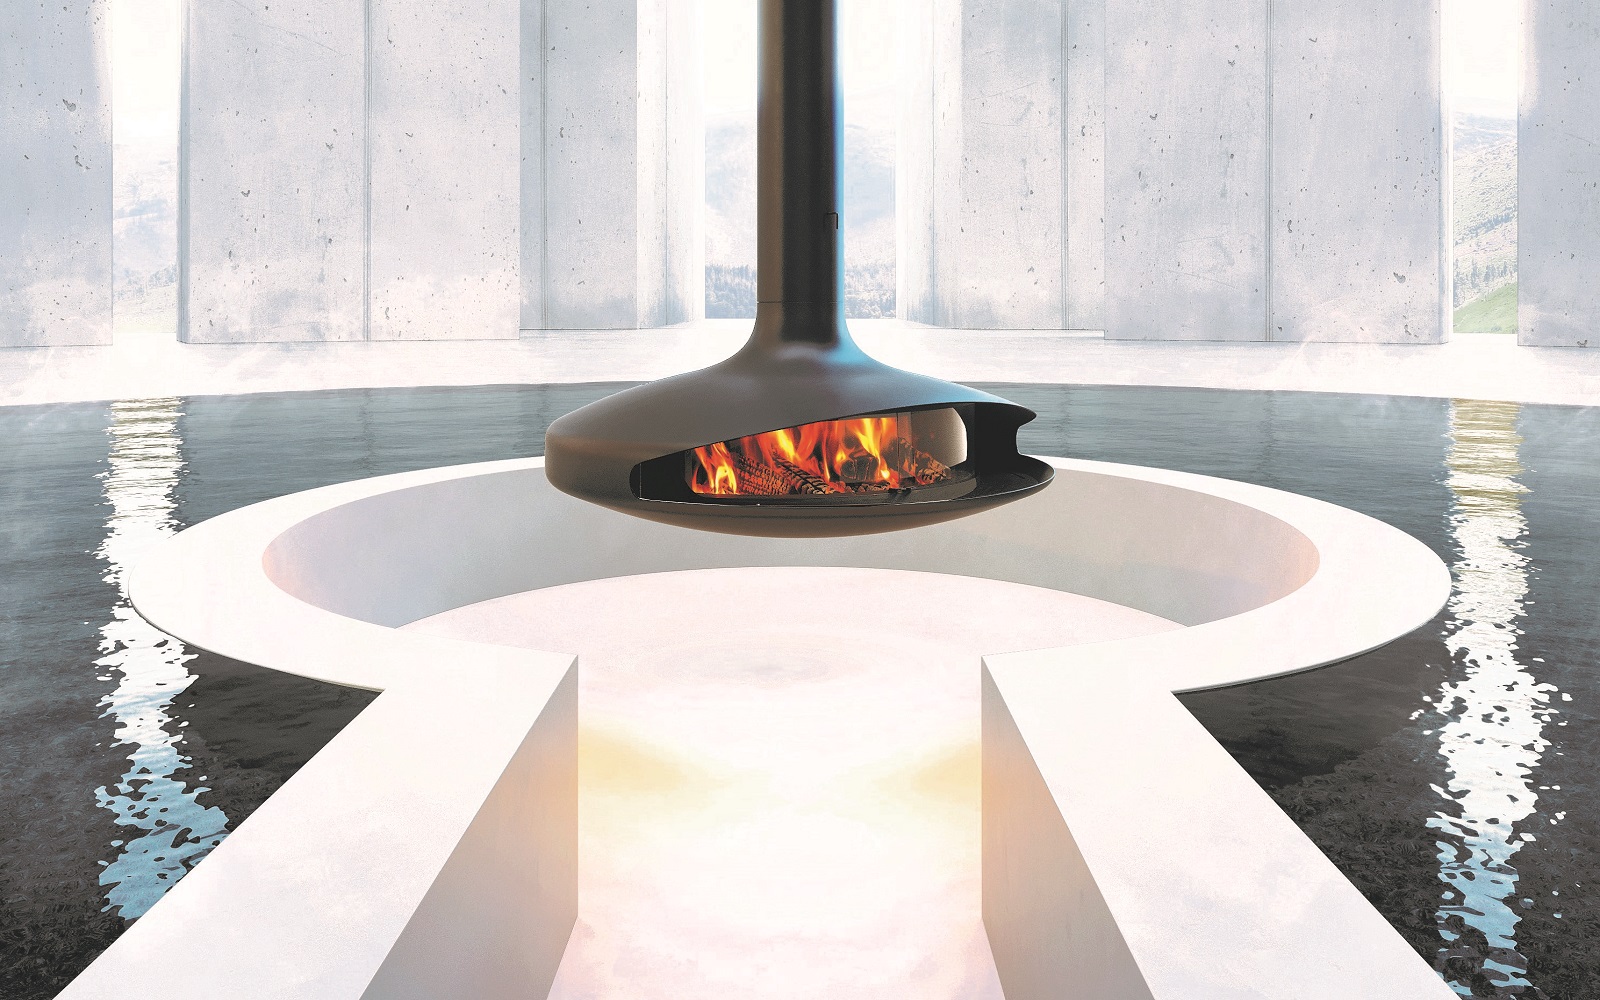 glazed Gyrofocus by focus fireplace wins gold award at German Design Awards